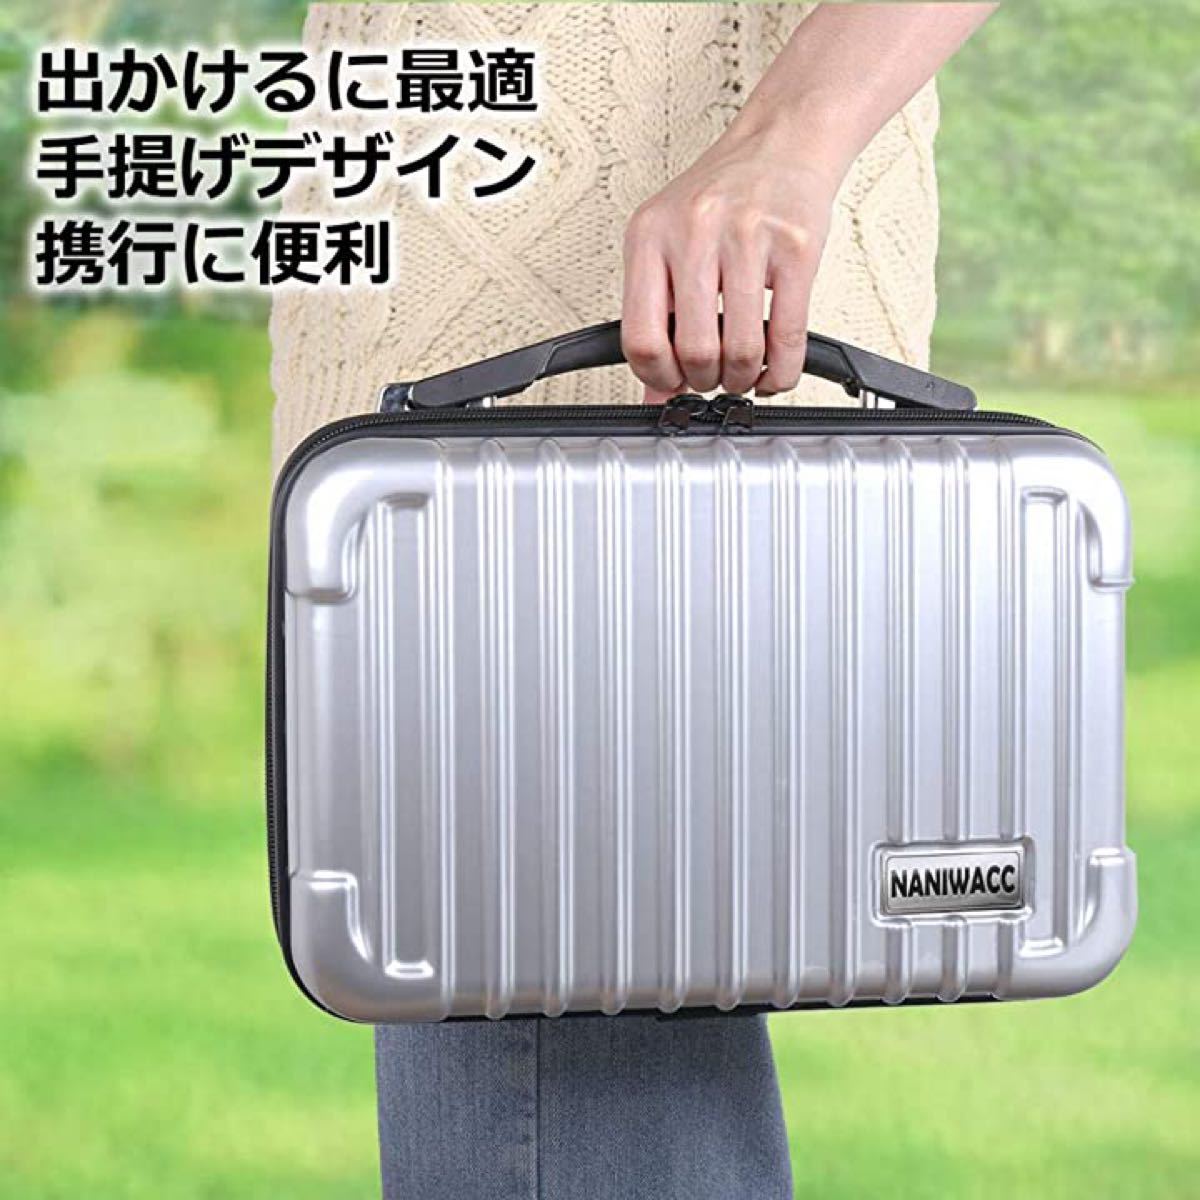 任天堂 Switch ケース 収納バッグ ニンテンドースイッチ用 オールインワン